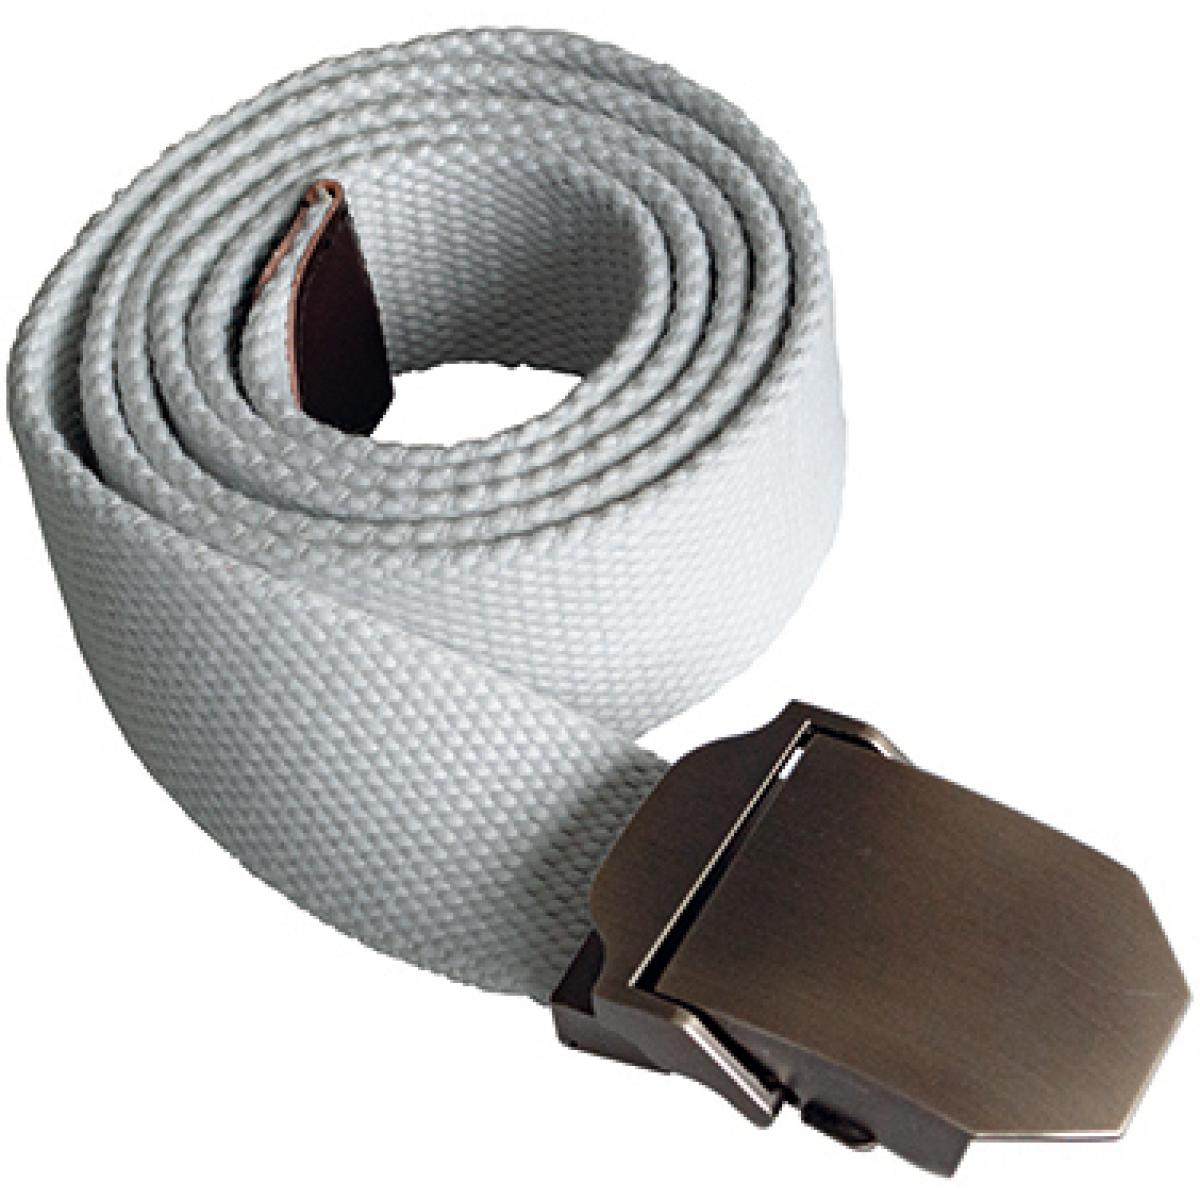 Hersteller: Korntex Herstellernummer: KXWWBN Artikelbezeichnung: Workwear Belt Classic, 140 cm L, selbst kürzbar, B 4 cm Farbe: White